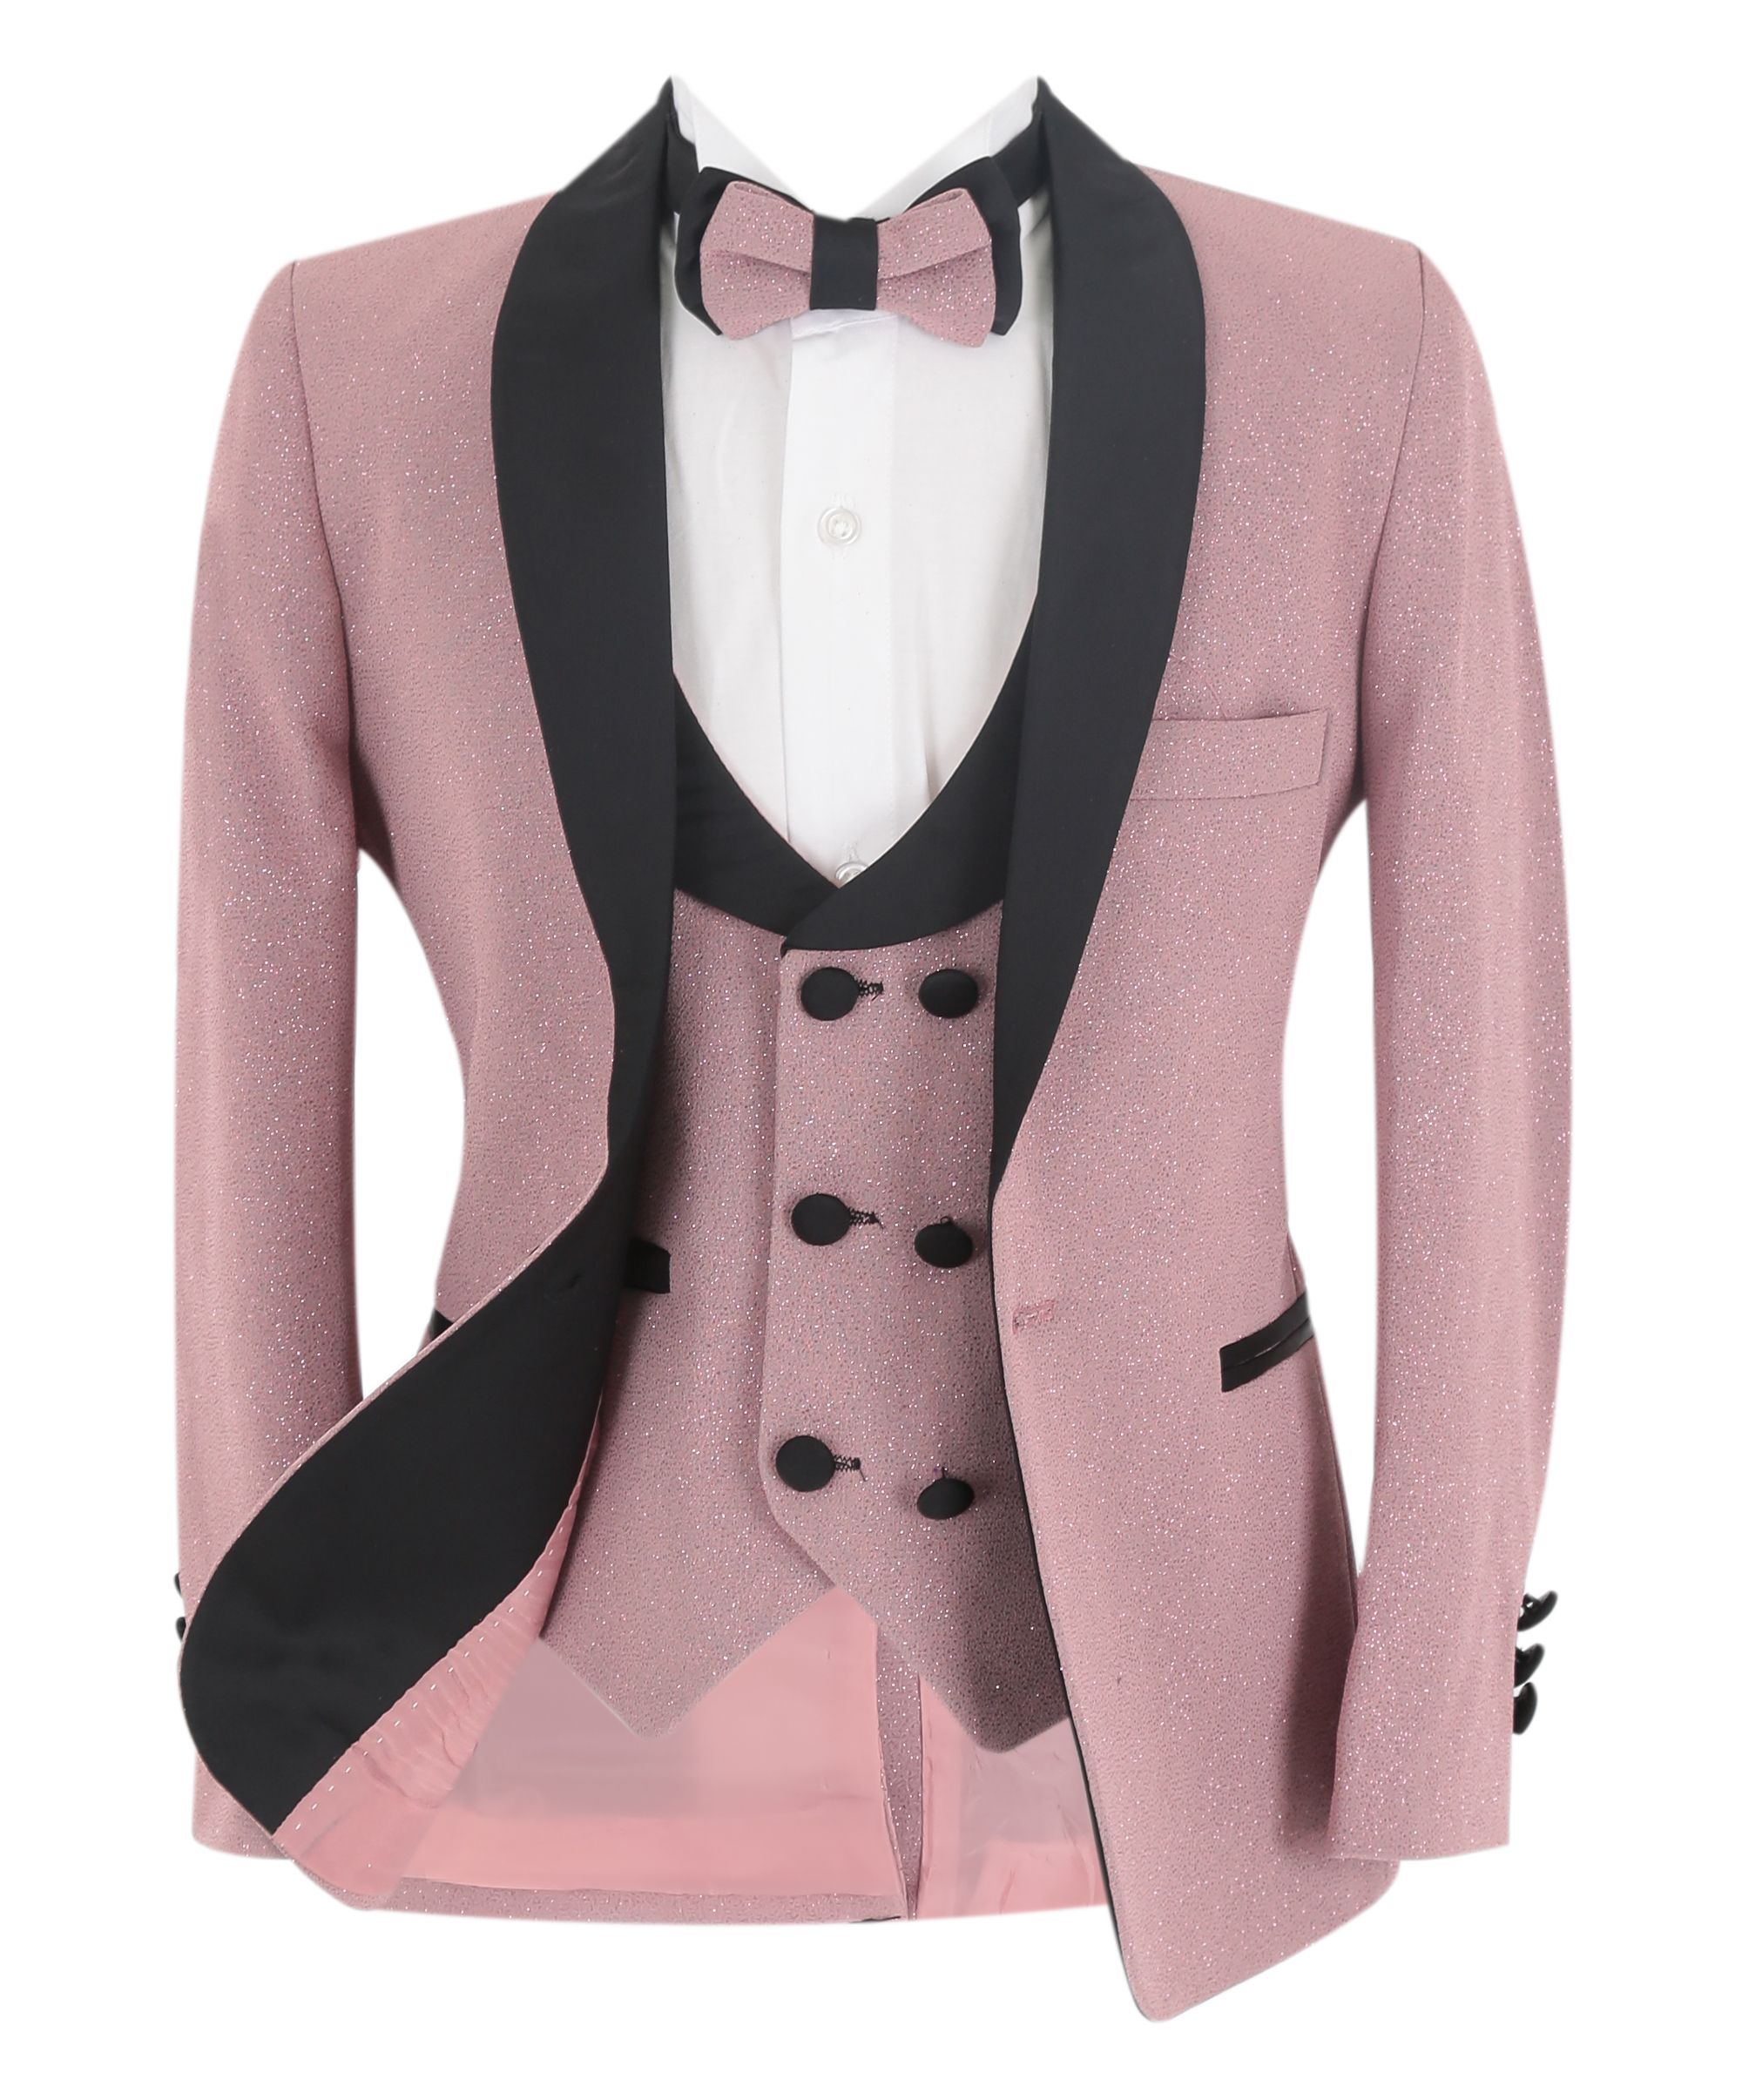 Costume Tuxedo Ajusté Brillant pour Garçon - Rose rougissant